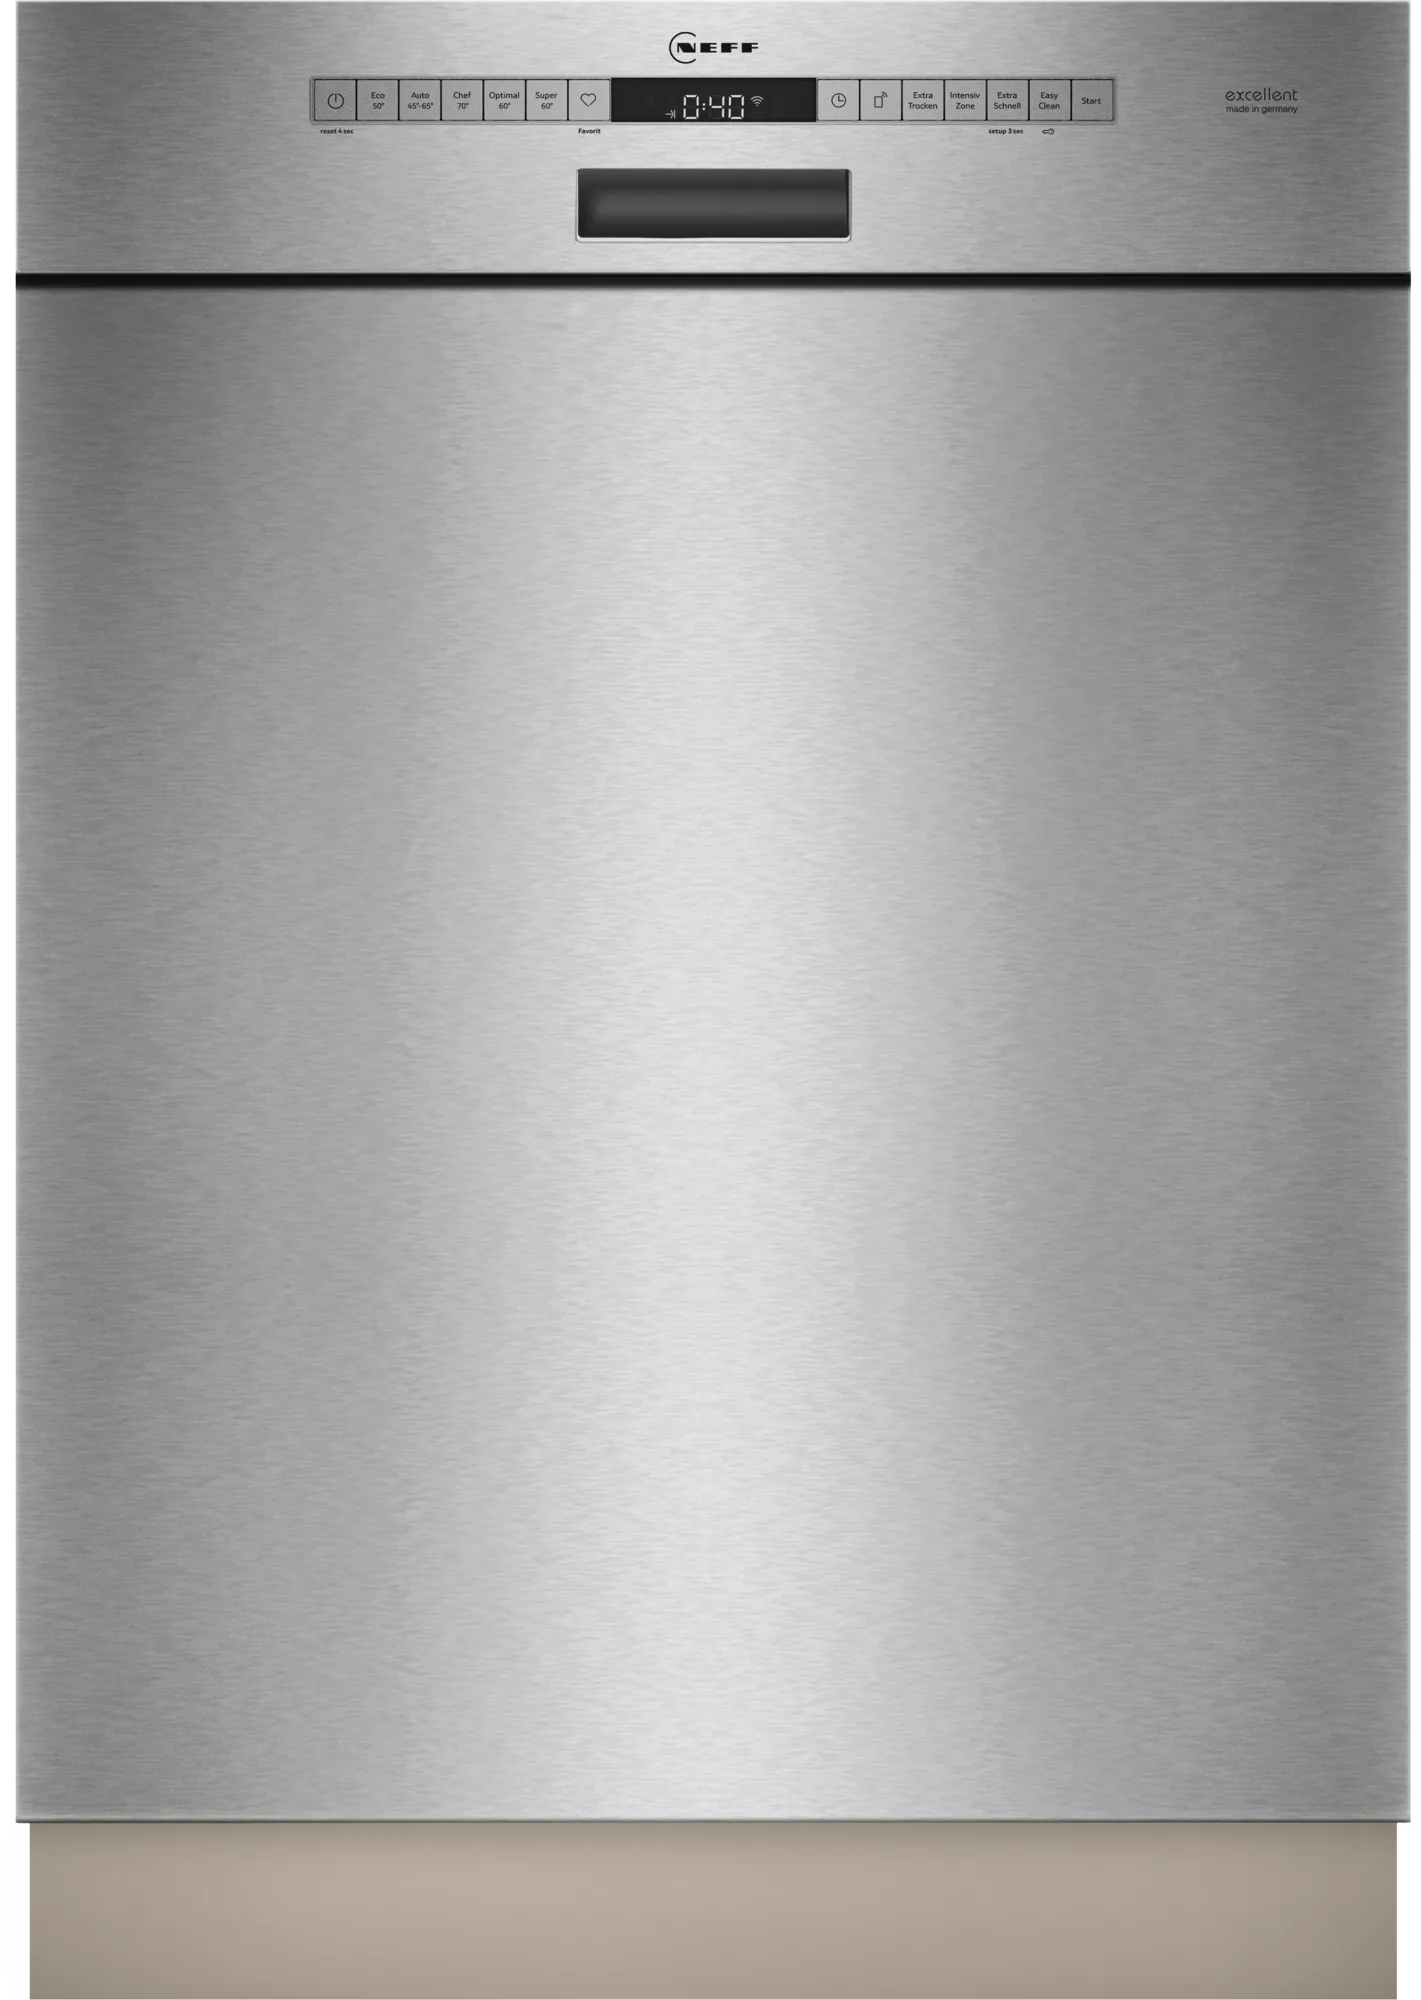 NEFF Unterbau-Geschirrspüler S125EBS02D, 60 cm, Edelstahl